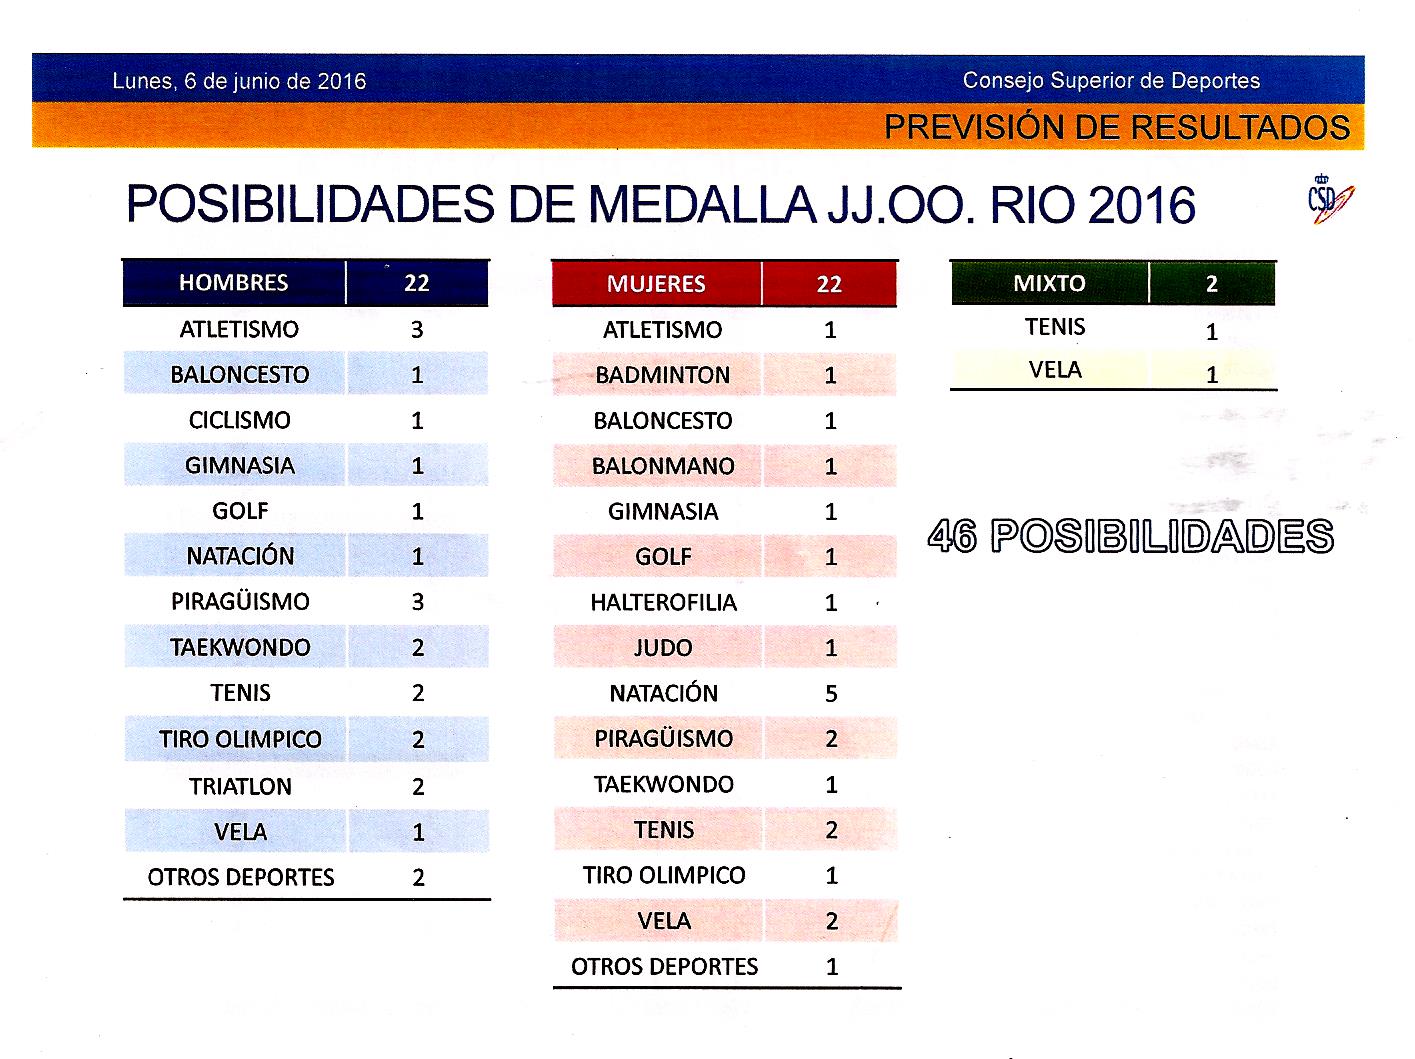 Gráfico del CSD sobre las posibilidades de medallas de España en Río 2016